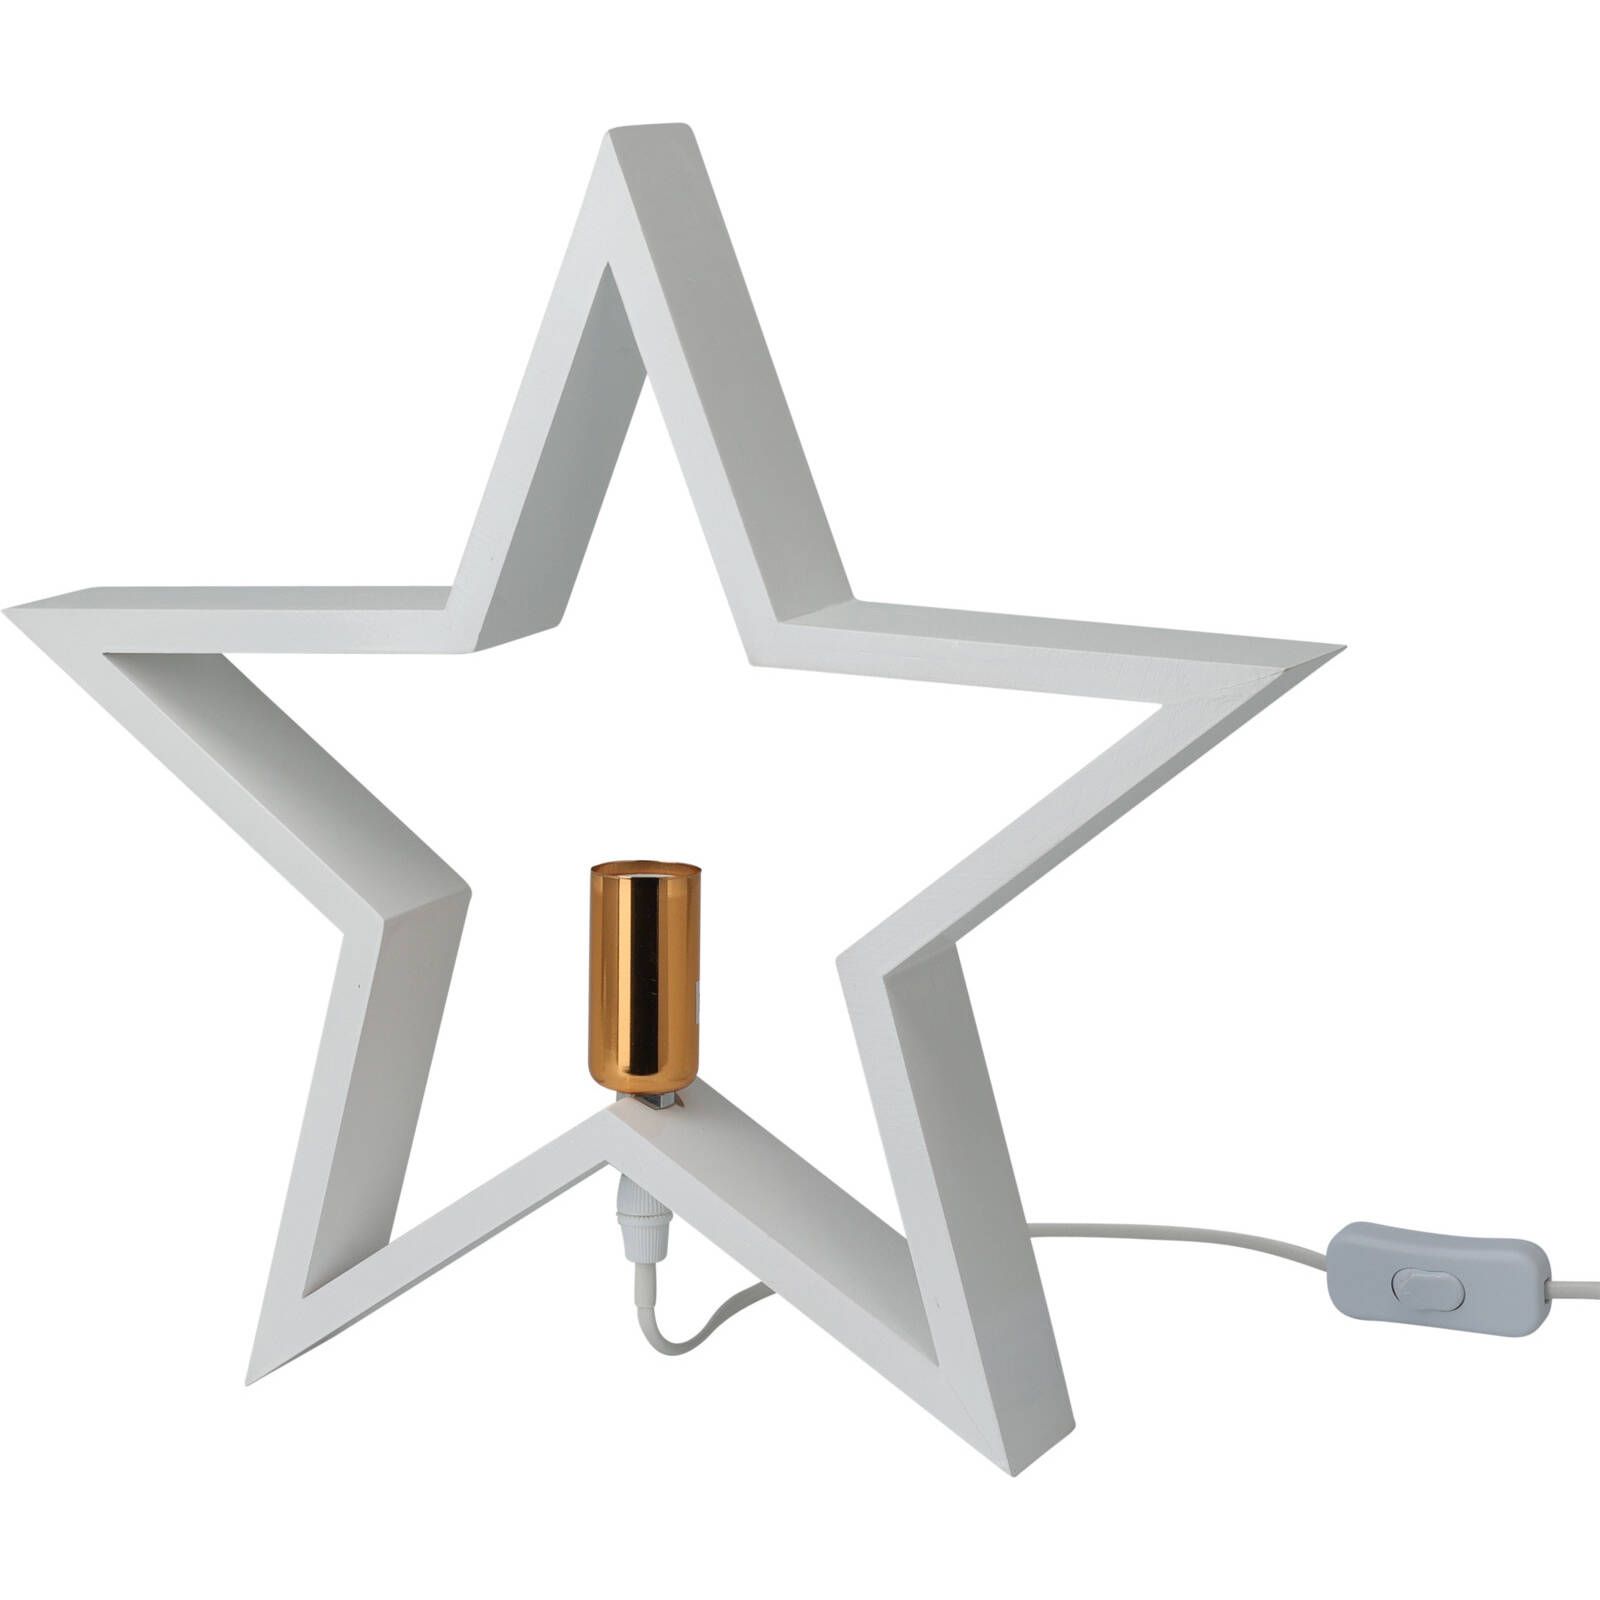 Home Styling Collection Vánoční svícen ve tvaru hvězdy STAR, bílý, 35 cm - EDAXO.CZ s.r.o.